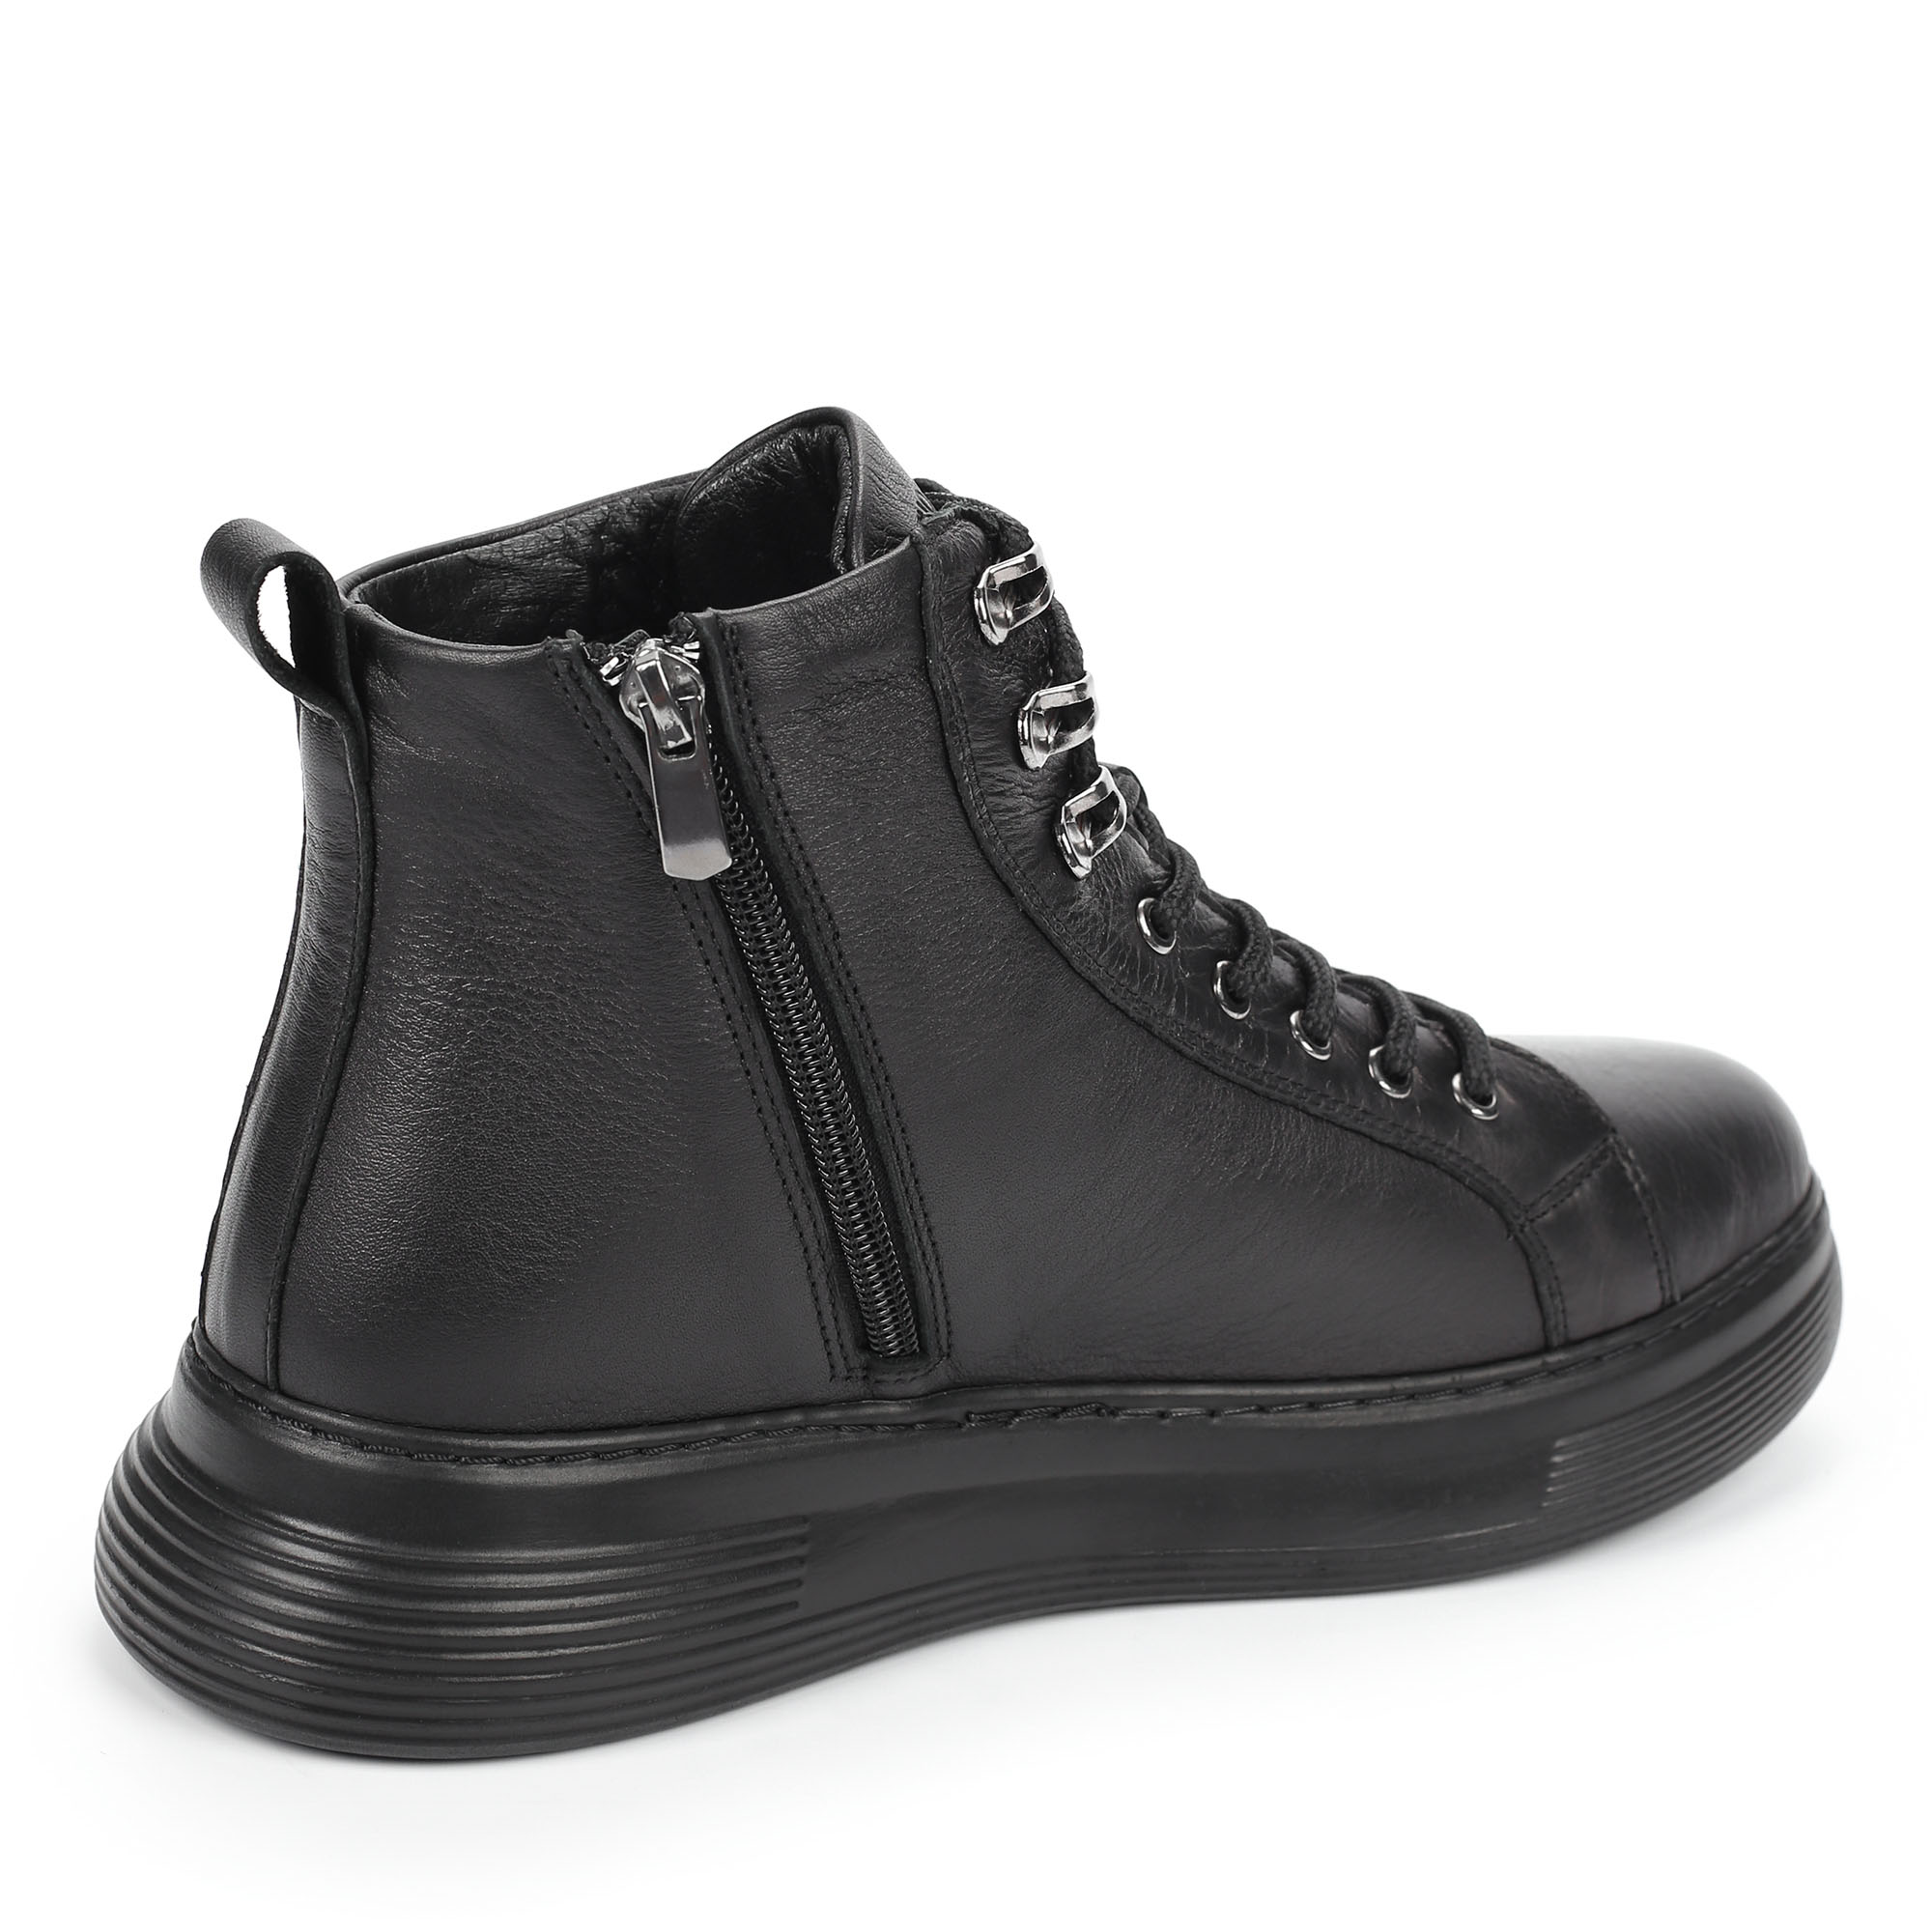 Ботинки Thomas Munz 558-036A-2102, цвет черный, размер 38 - фото 3